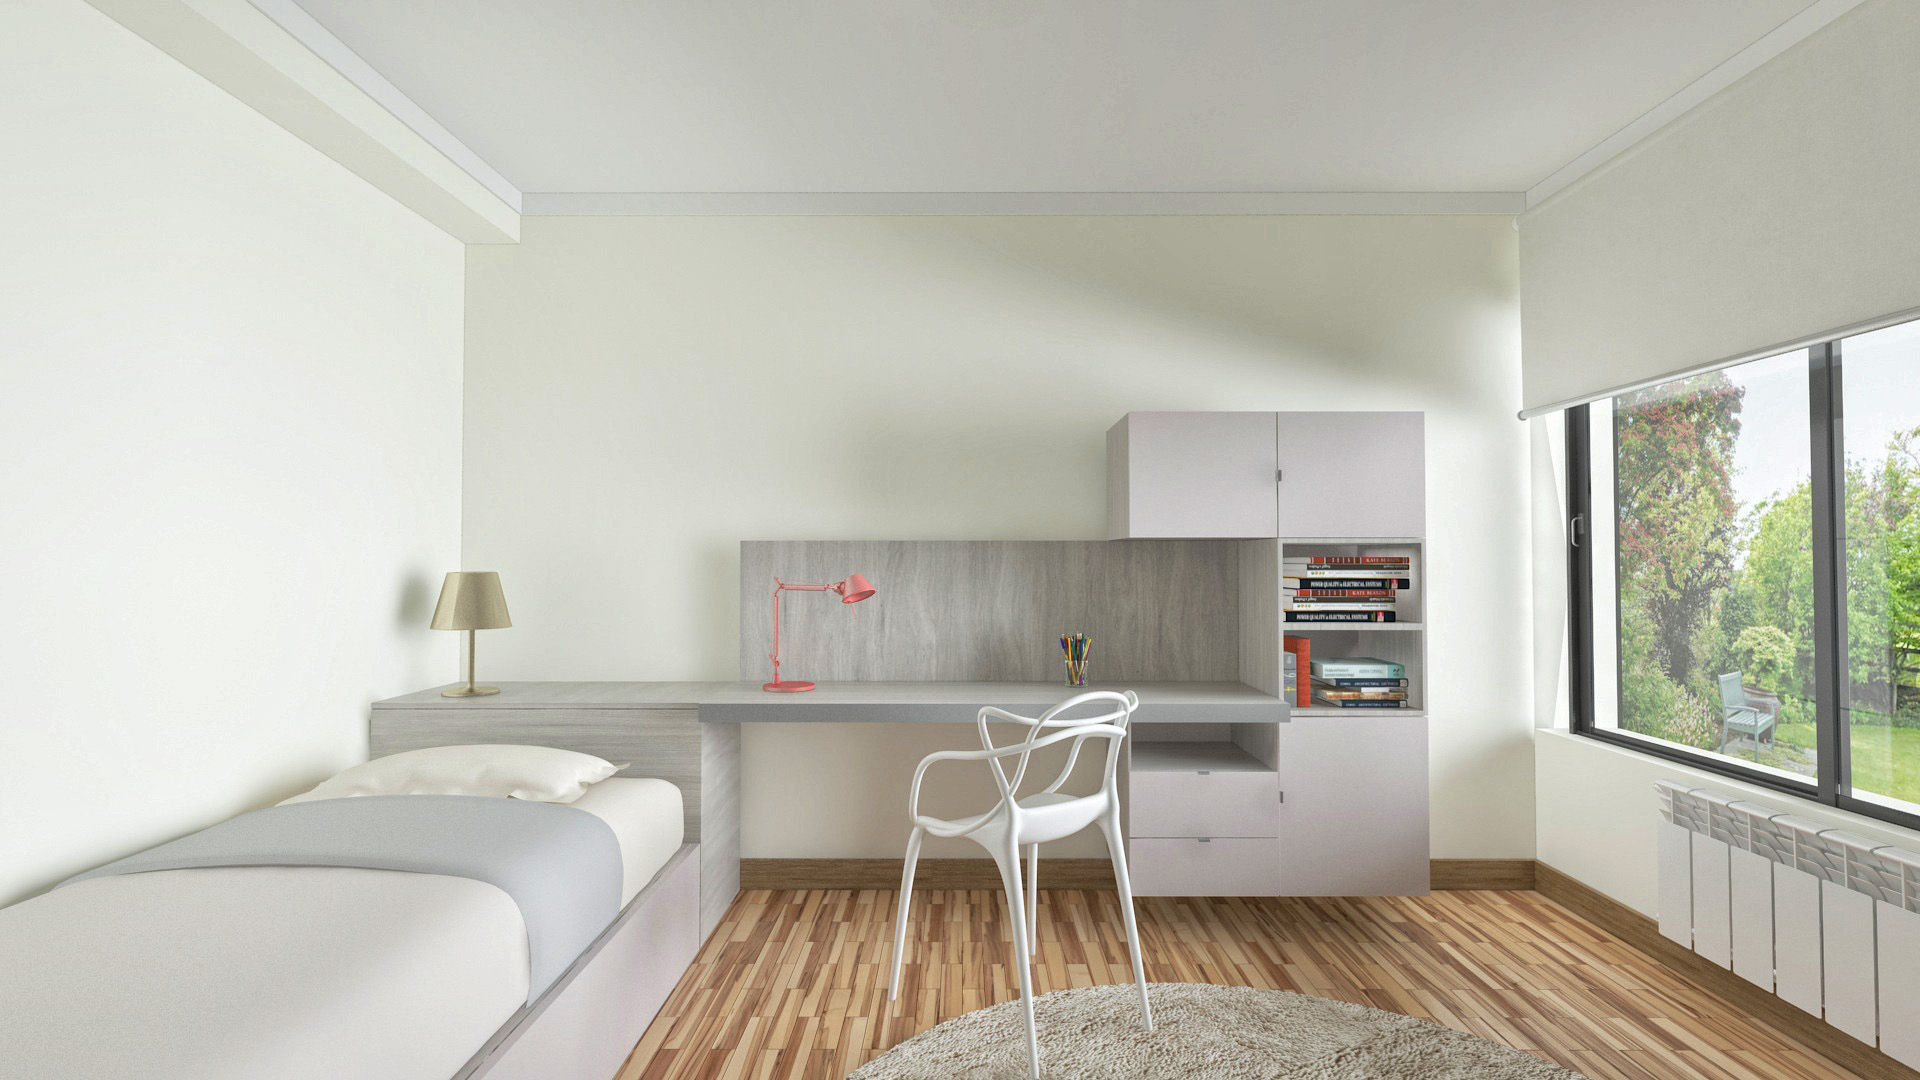 PROJETOS: 3D, INTERDOBLE BY MARTA SILVA - Design de Interiores INTERDOBLE BY MARTA SILVA - Design de Interiores Klassische Schlafzimmer